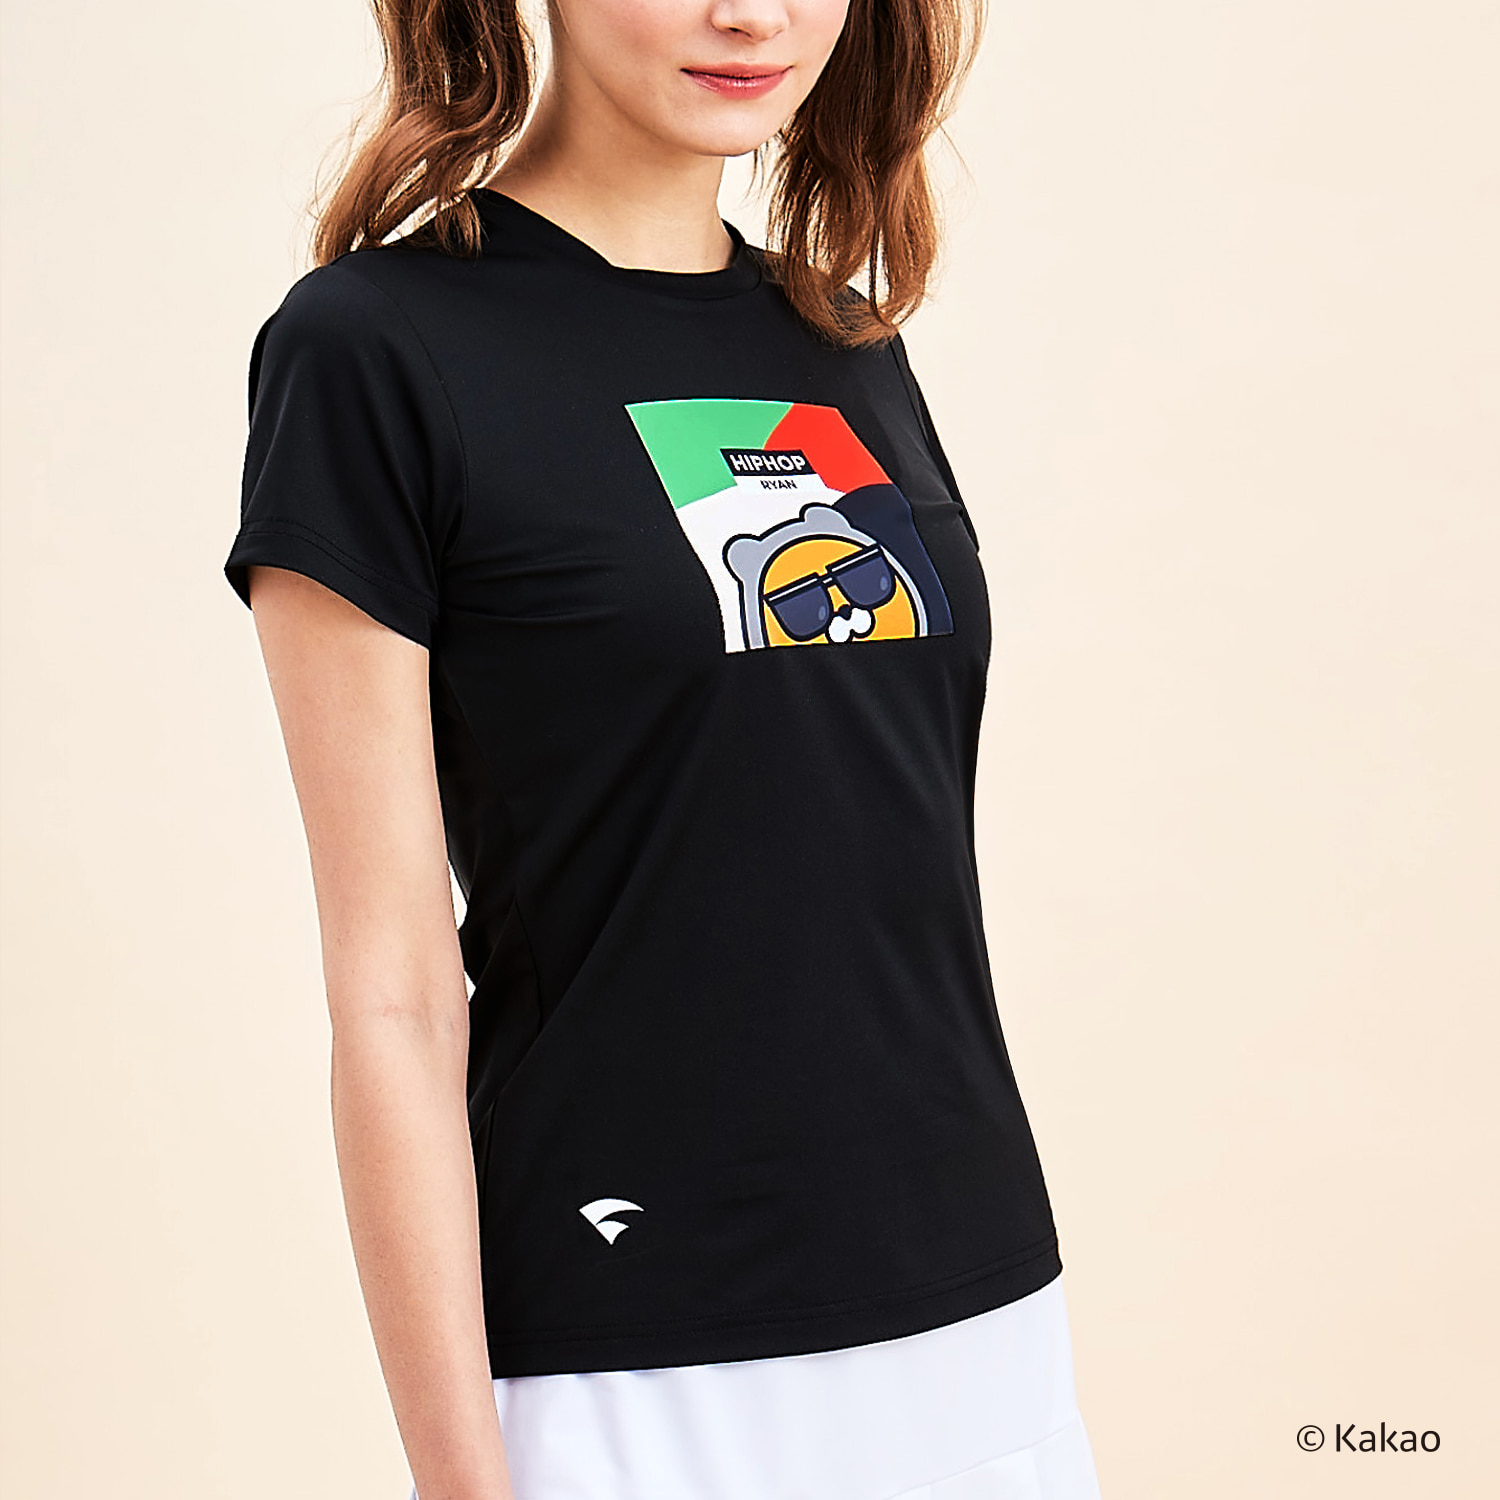 카카오프렌즈 반팔 티셔츠 KRT-22120 / WOMEN